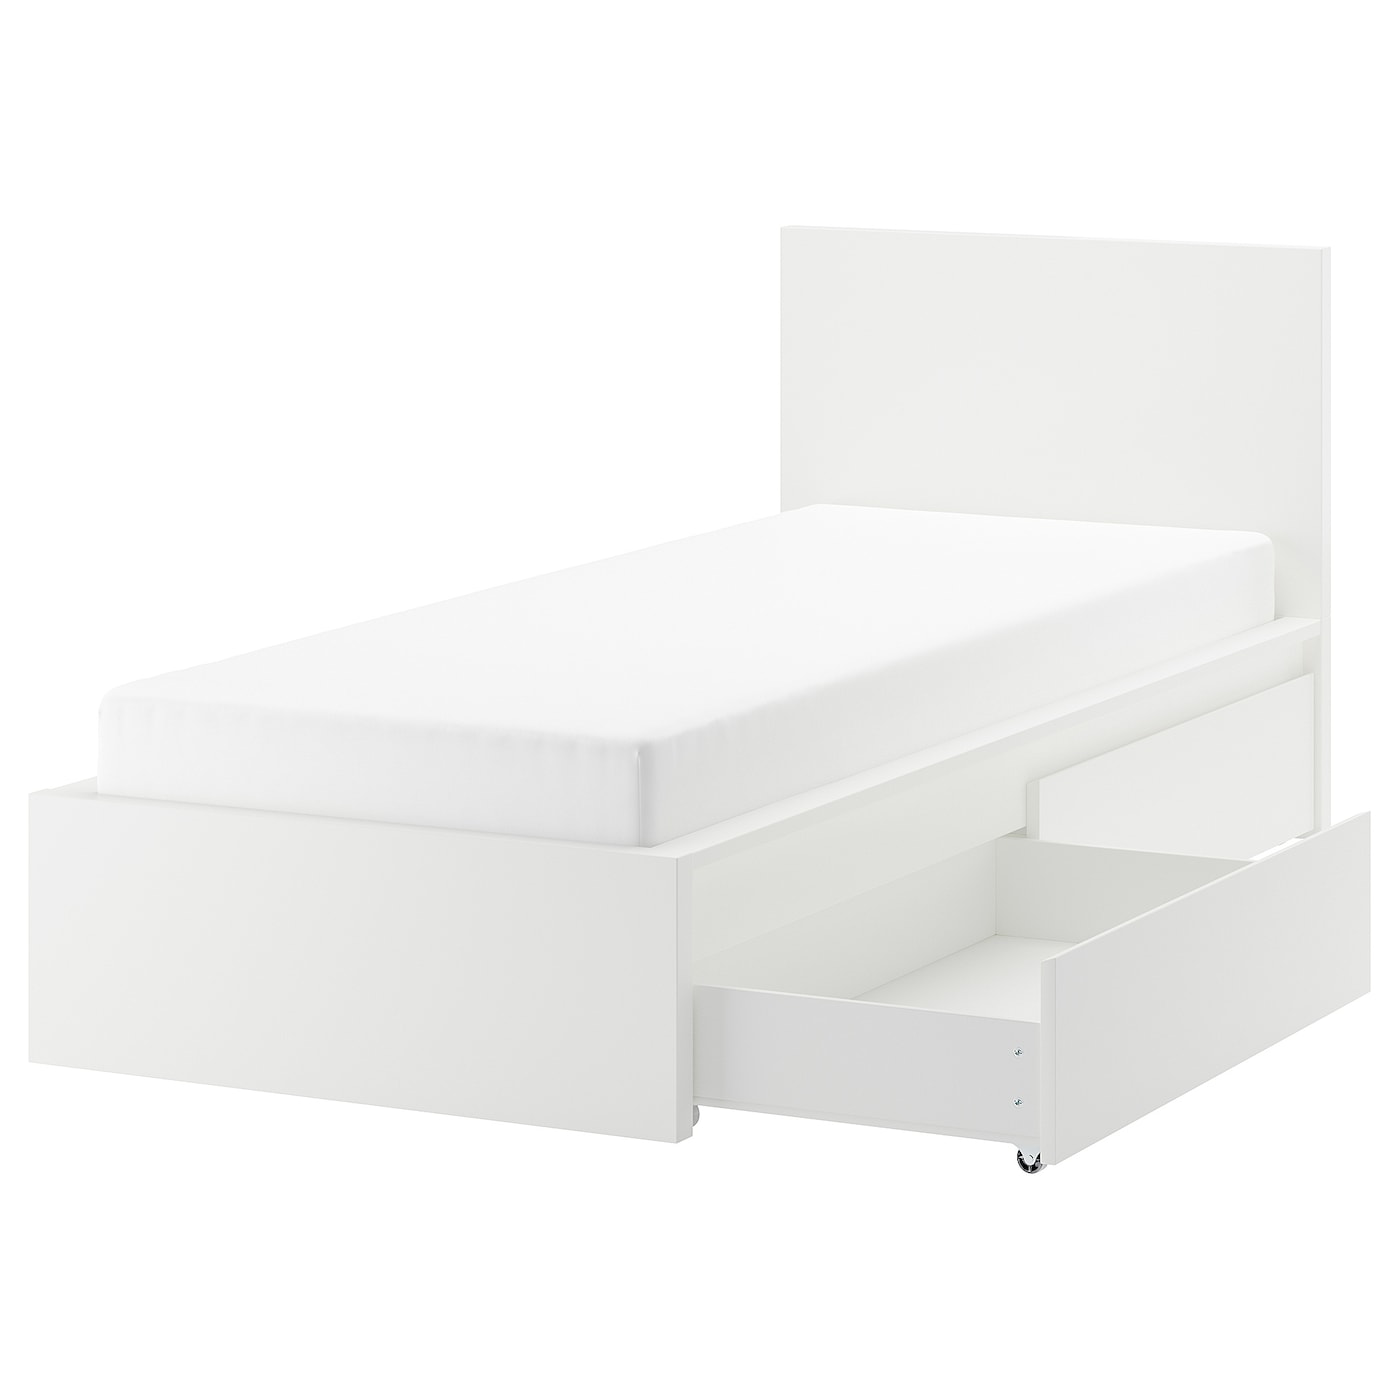 Каркас кровати с 2 ящиками для хранения - IKEA MALM, 200х90 см, белый, МАЛЬМ ИКЕА